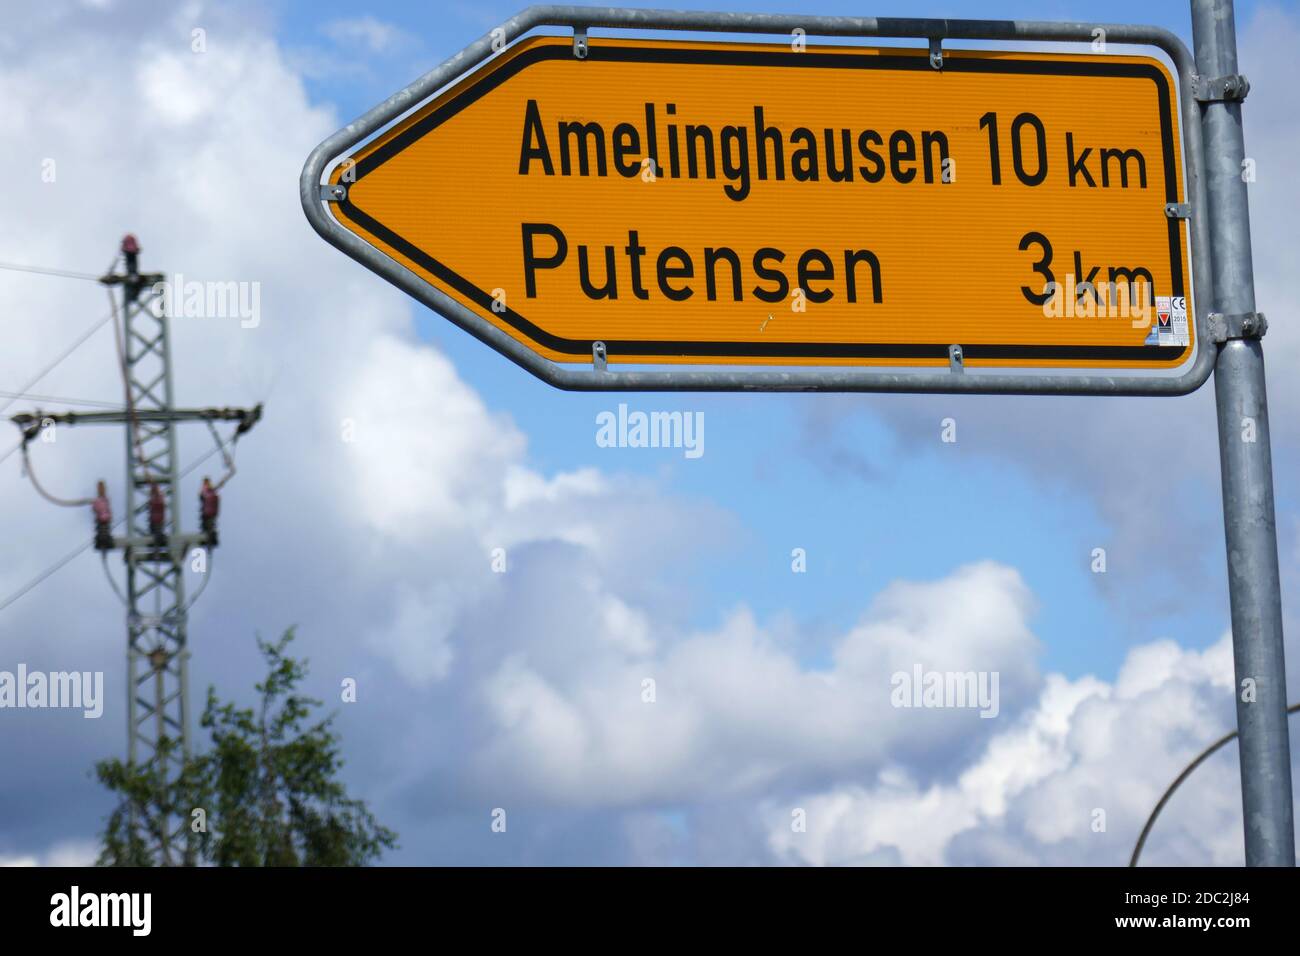 Arrow sign for Amelinghausen Putensen Stock Photo